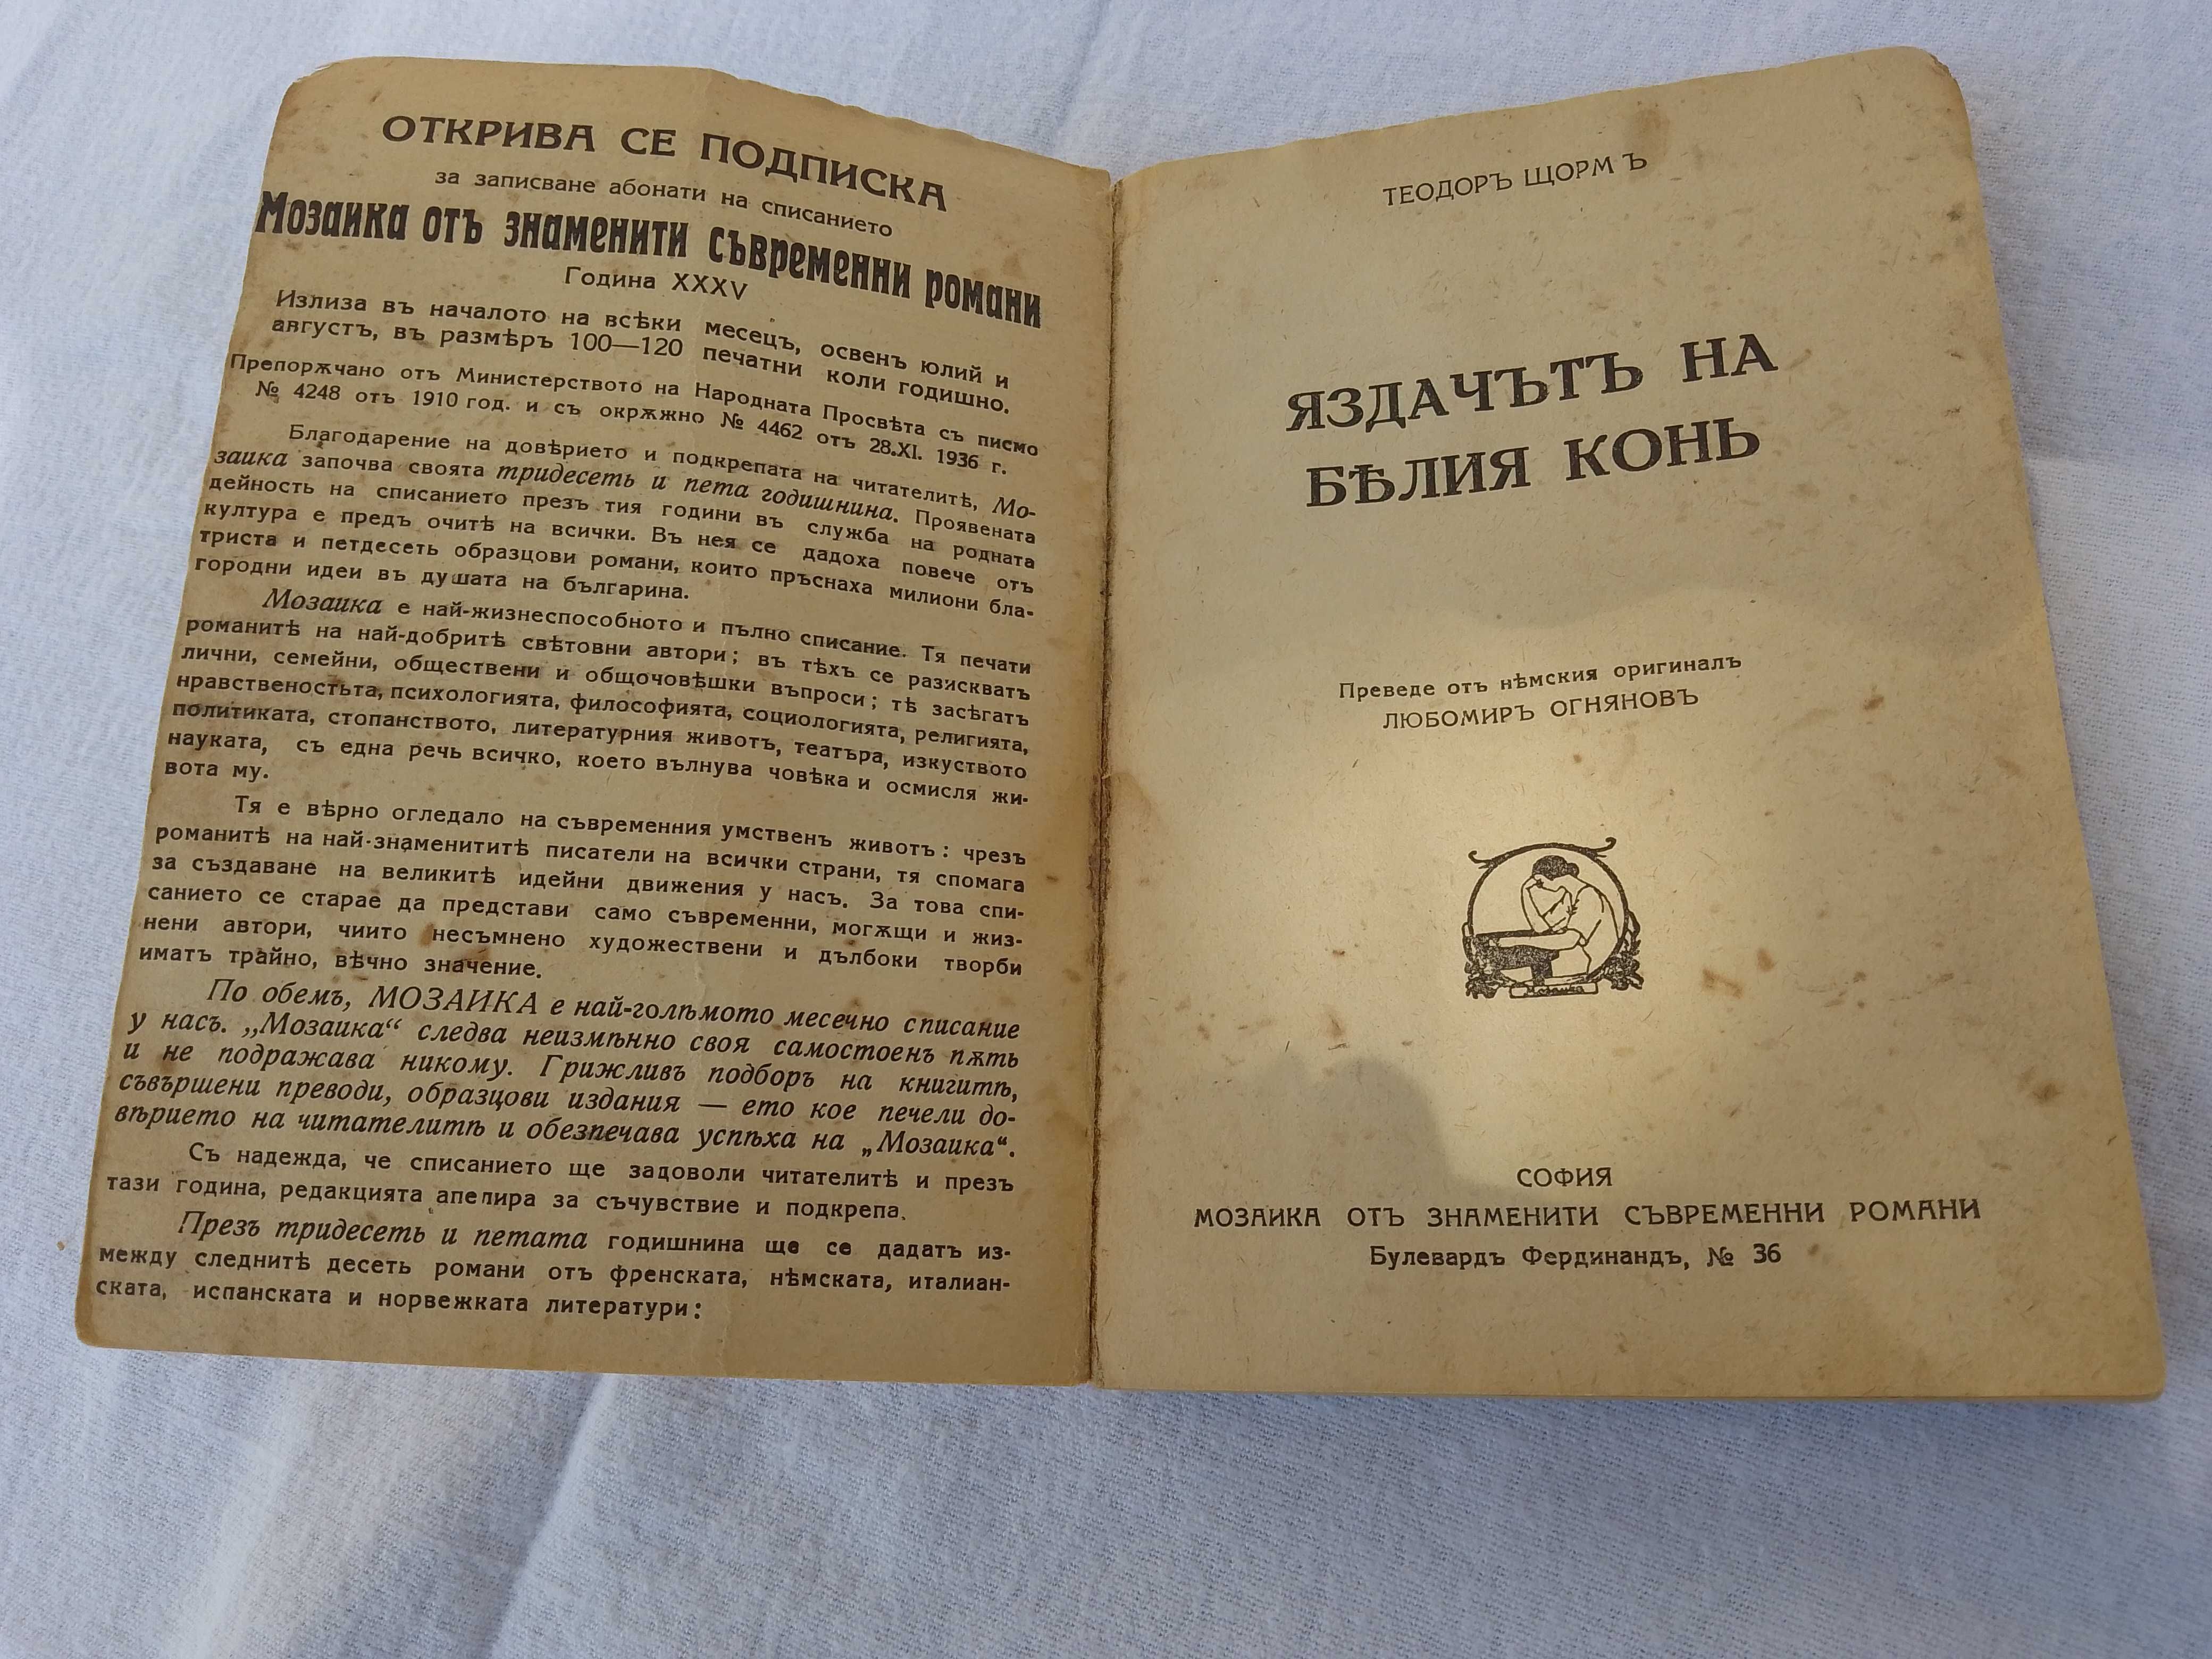 Антична книга от 1943 година - Андреась Хаукландь